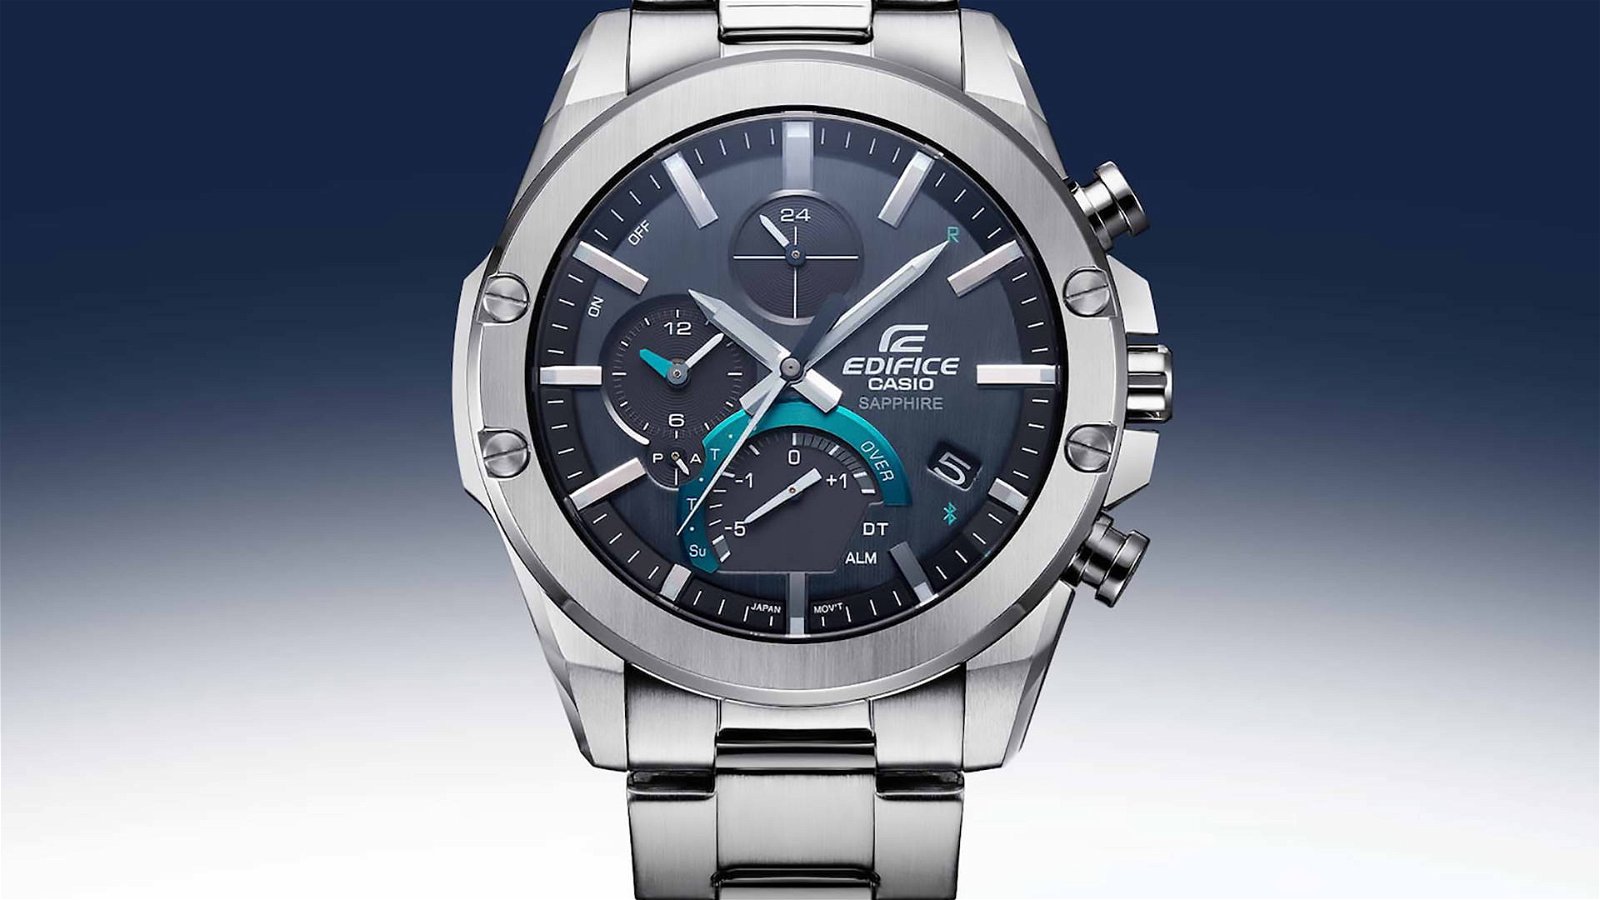 Immagine di Casio EQB-1000D-1A, orologio sportivo con funzioni smart e cassa sottile